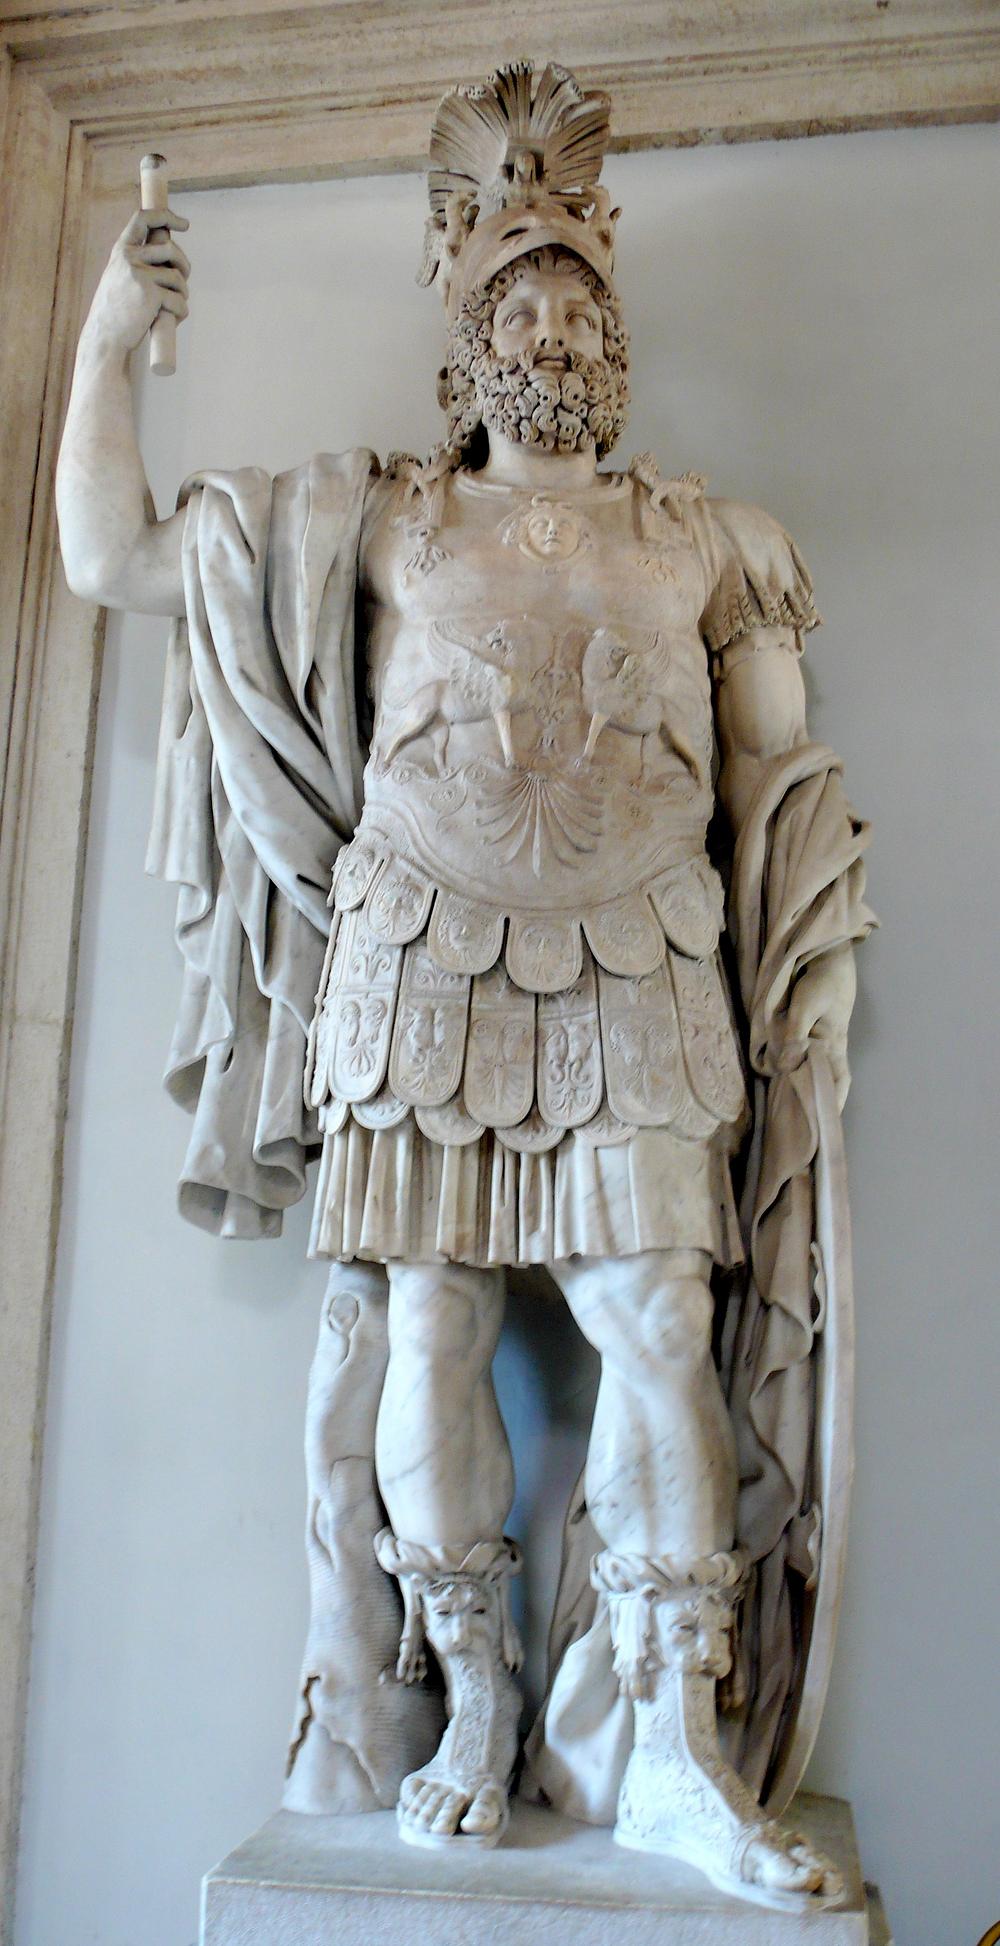  Ilustracija: Statua Marsa, rimskog bog rata. Izvajano krajem prvog ili početkom drugog veka i čuvano u Musei Capitolini u Rimu, Italija.